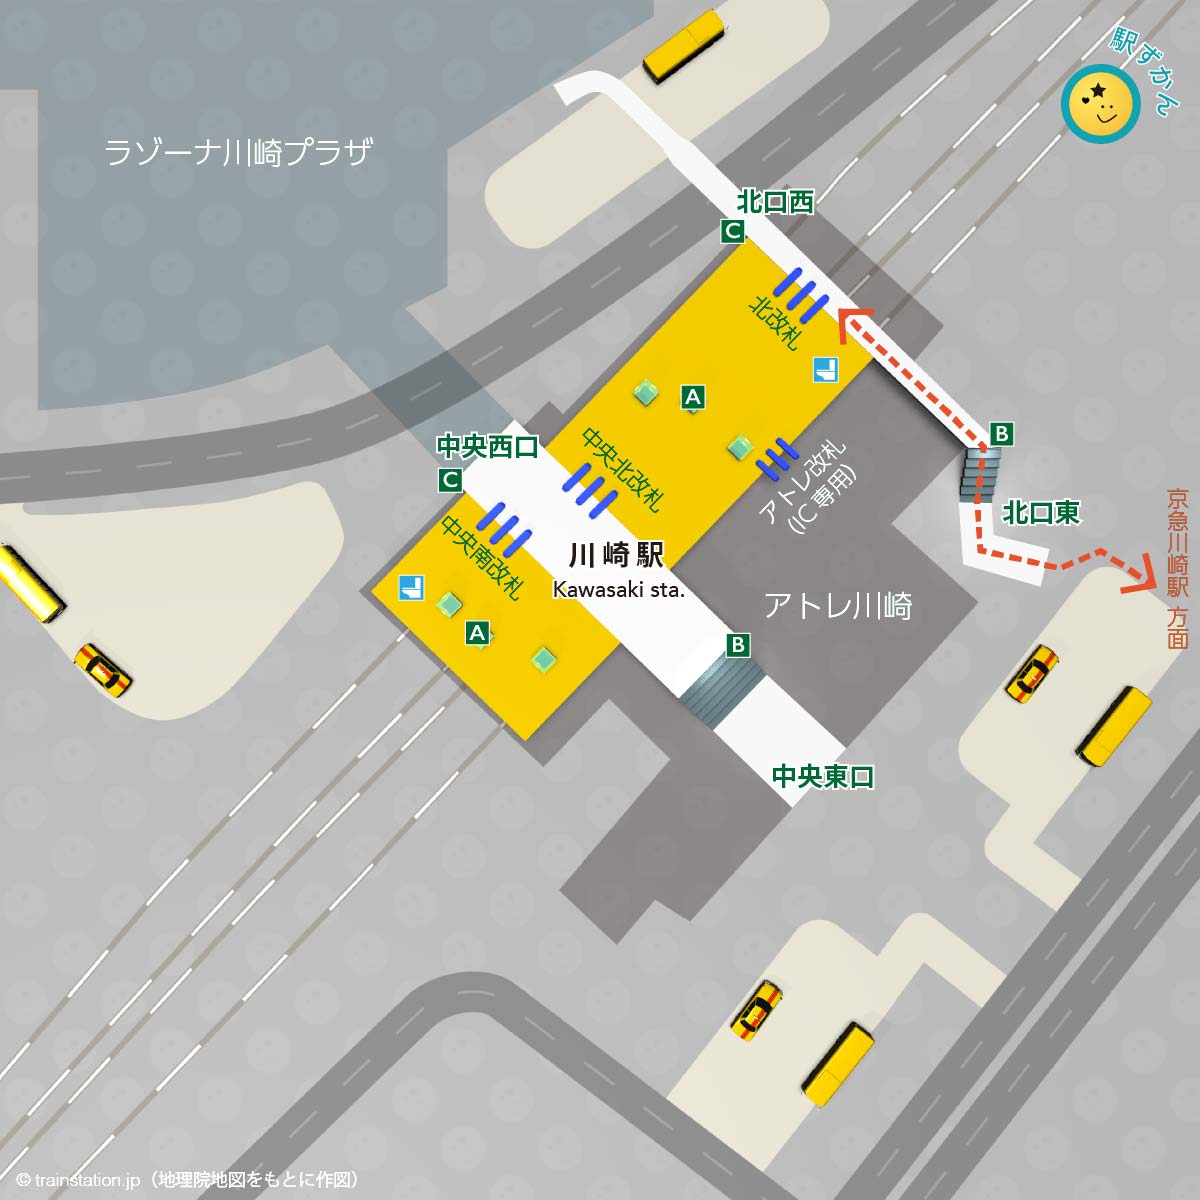 川崎駅構内図と周辺マップ